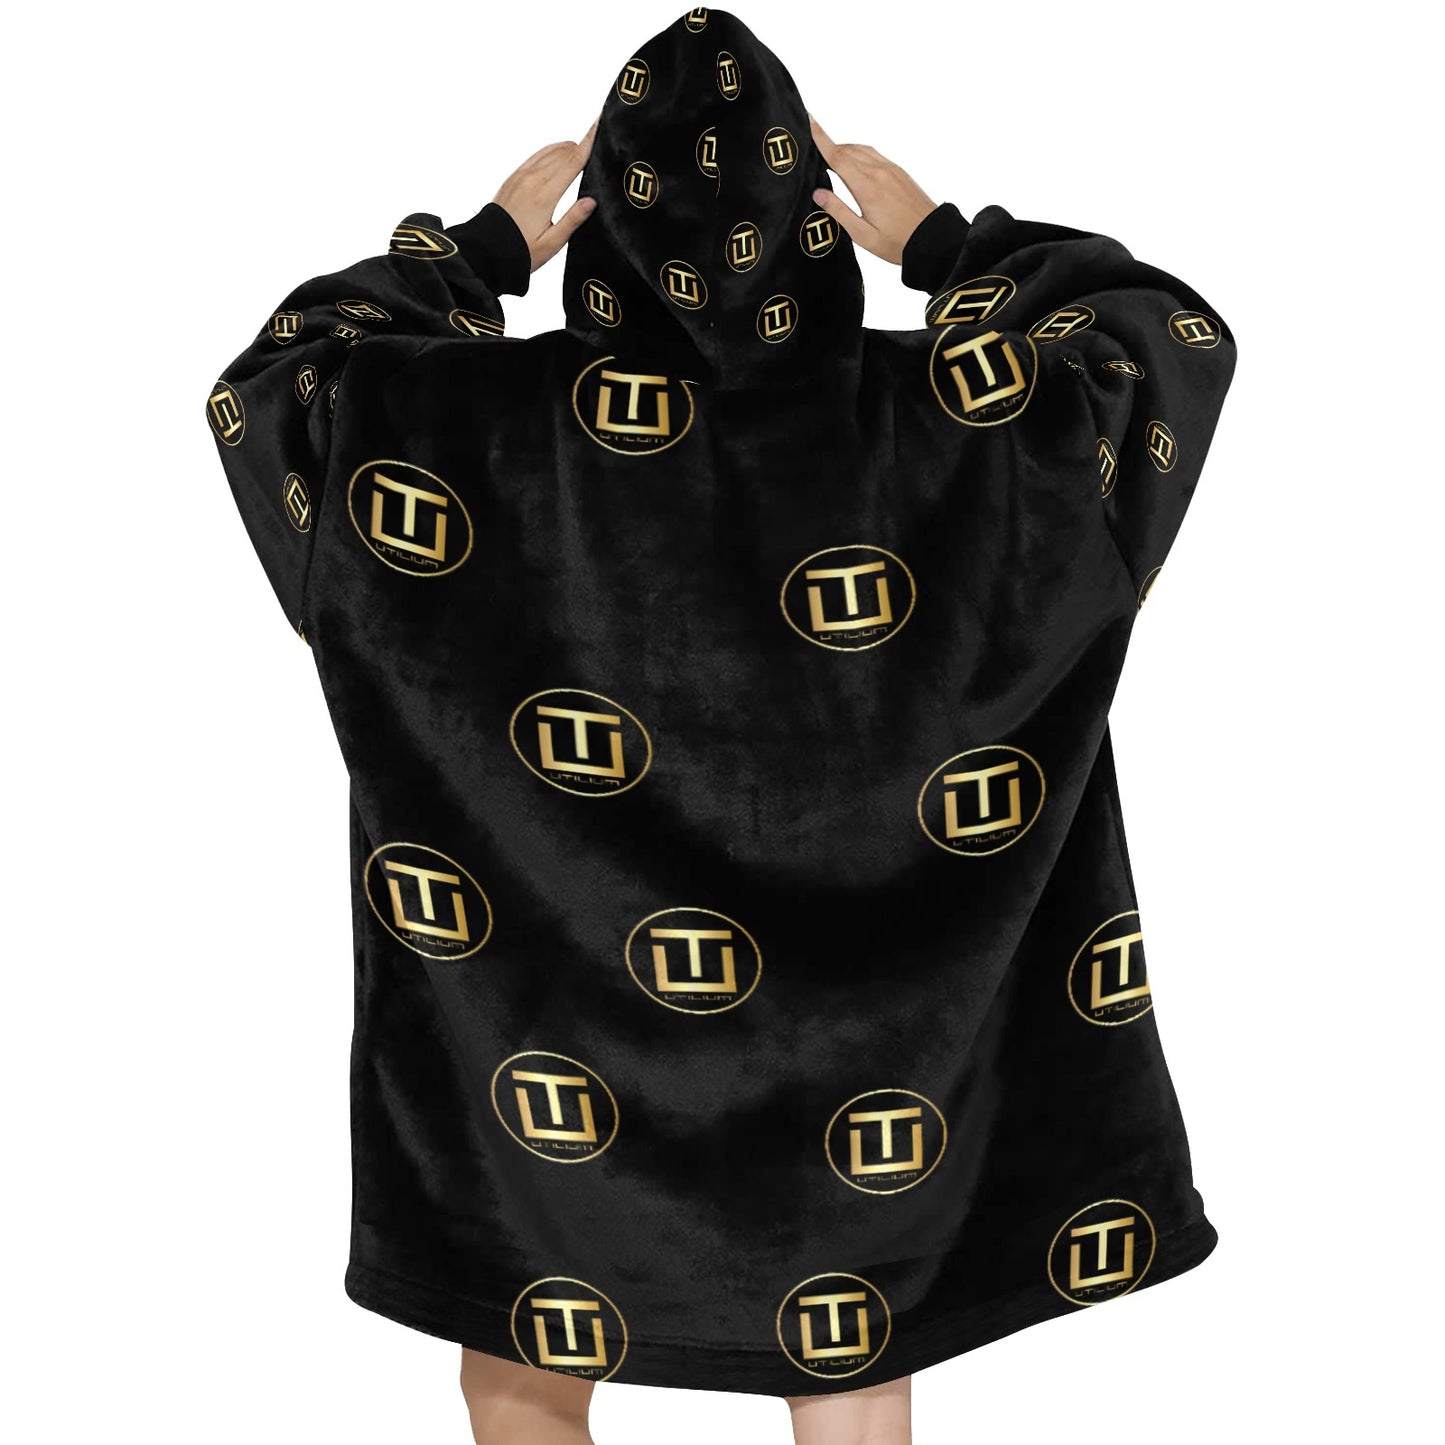 Utilium Blanket Hoodie for Women - Oodie